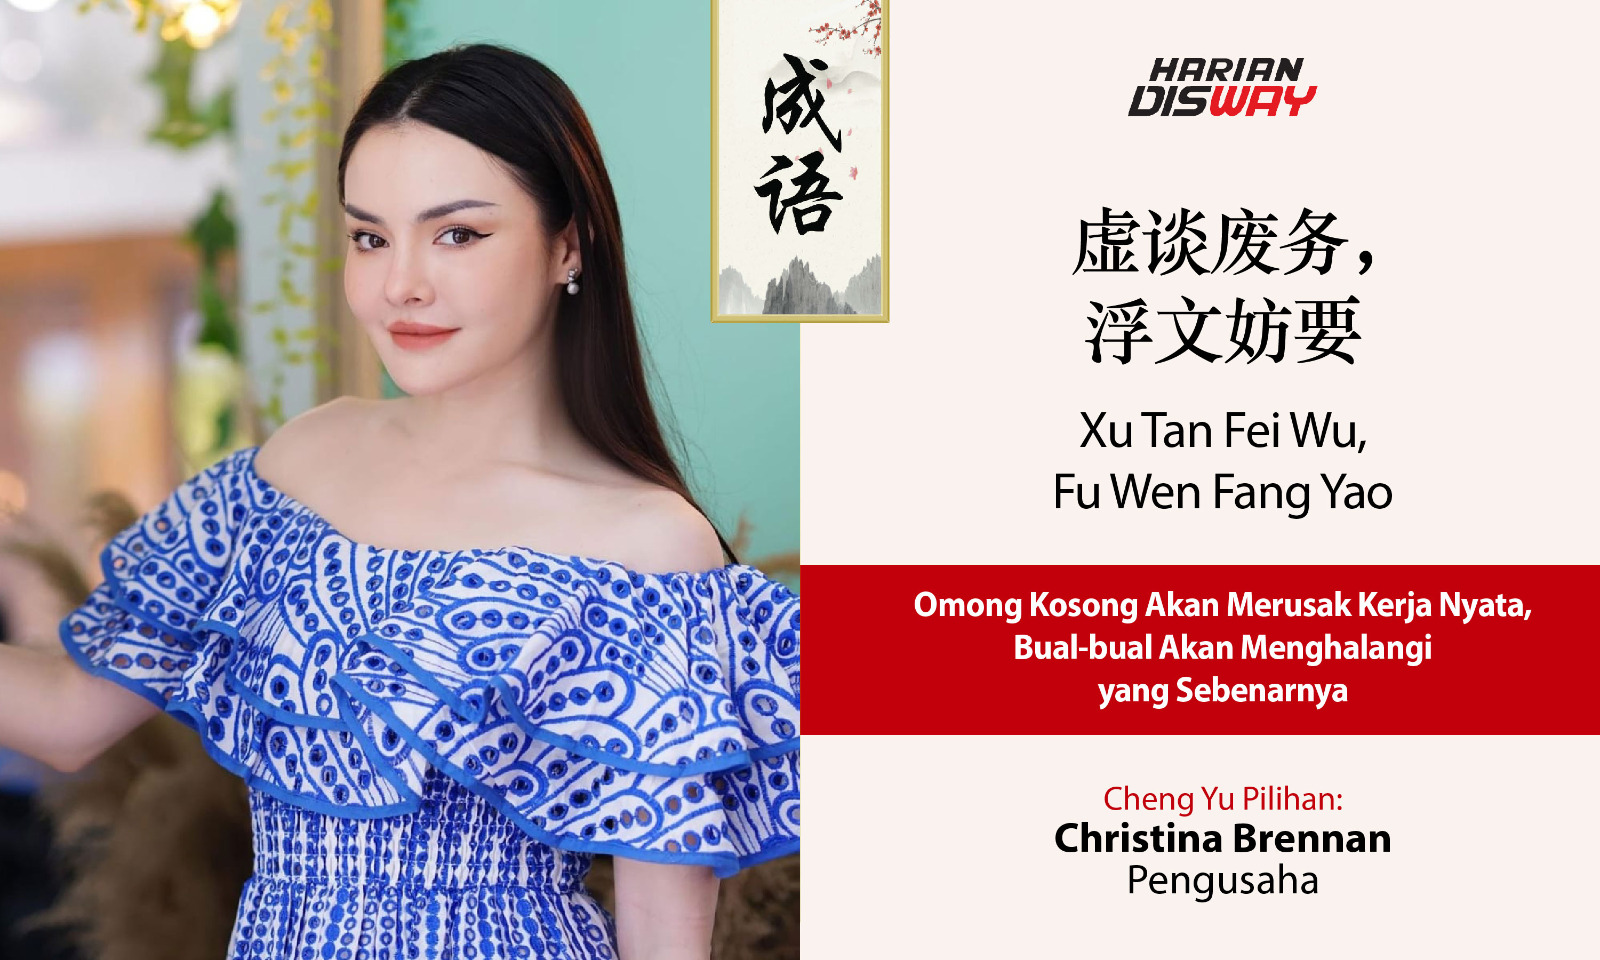 Cheng Yu Pilihan Pengusaha dan Sosialita Christina Brennan: Xu Tan Fei Wu Fu Wen Fang Yao